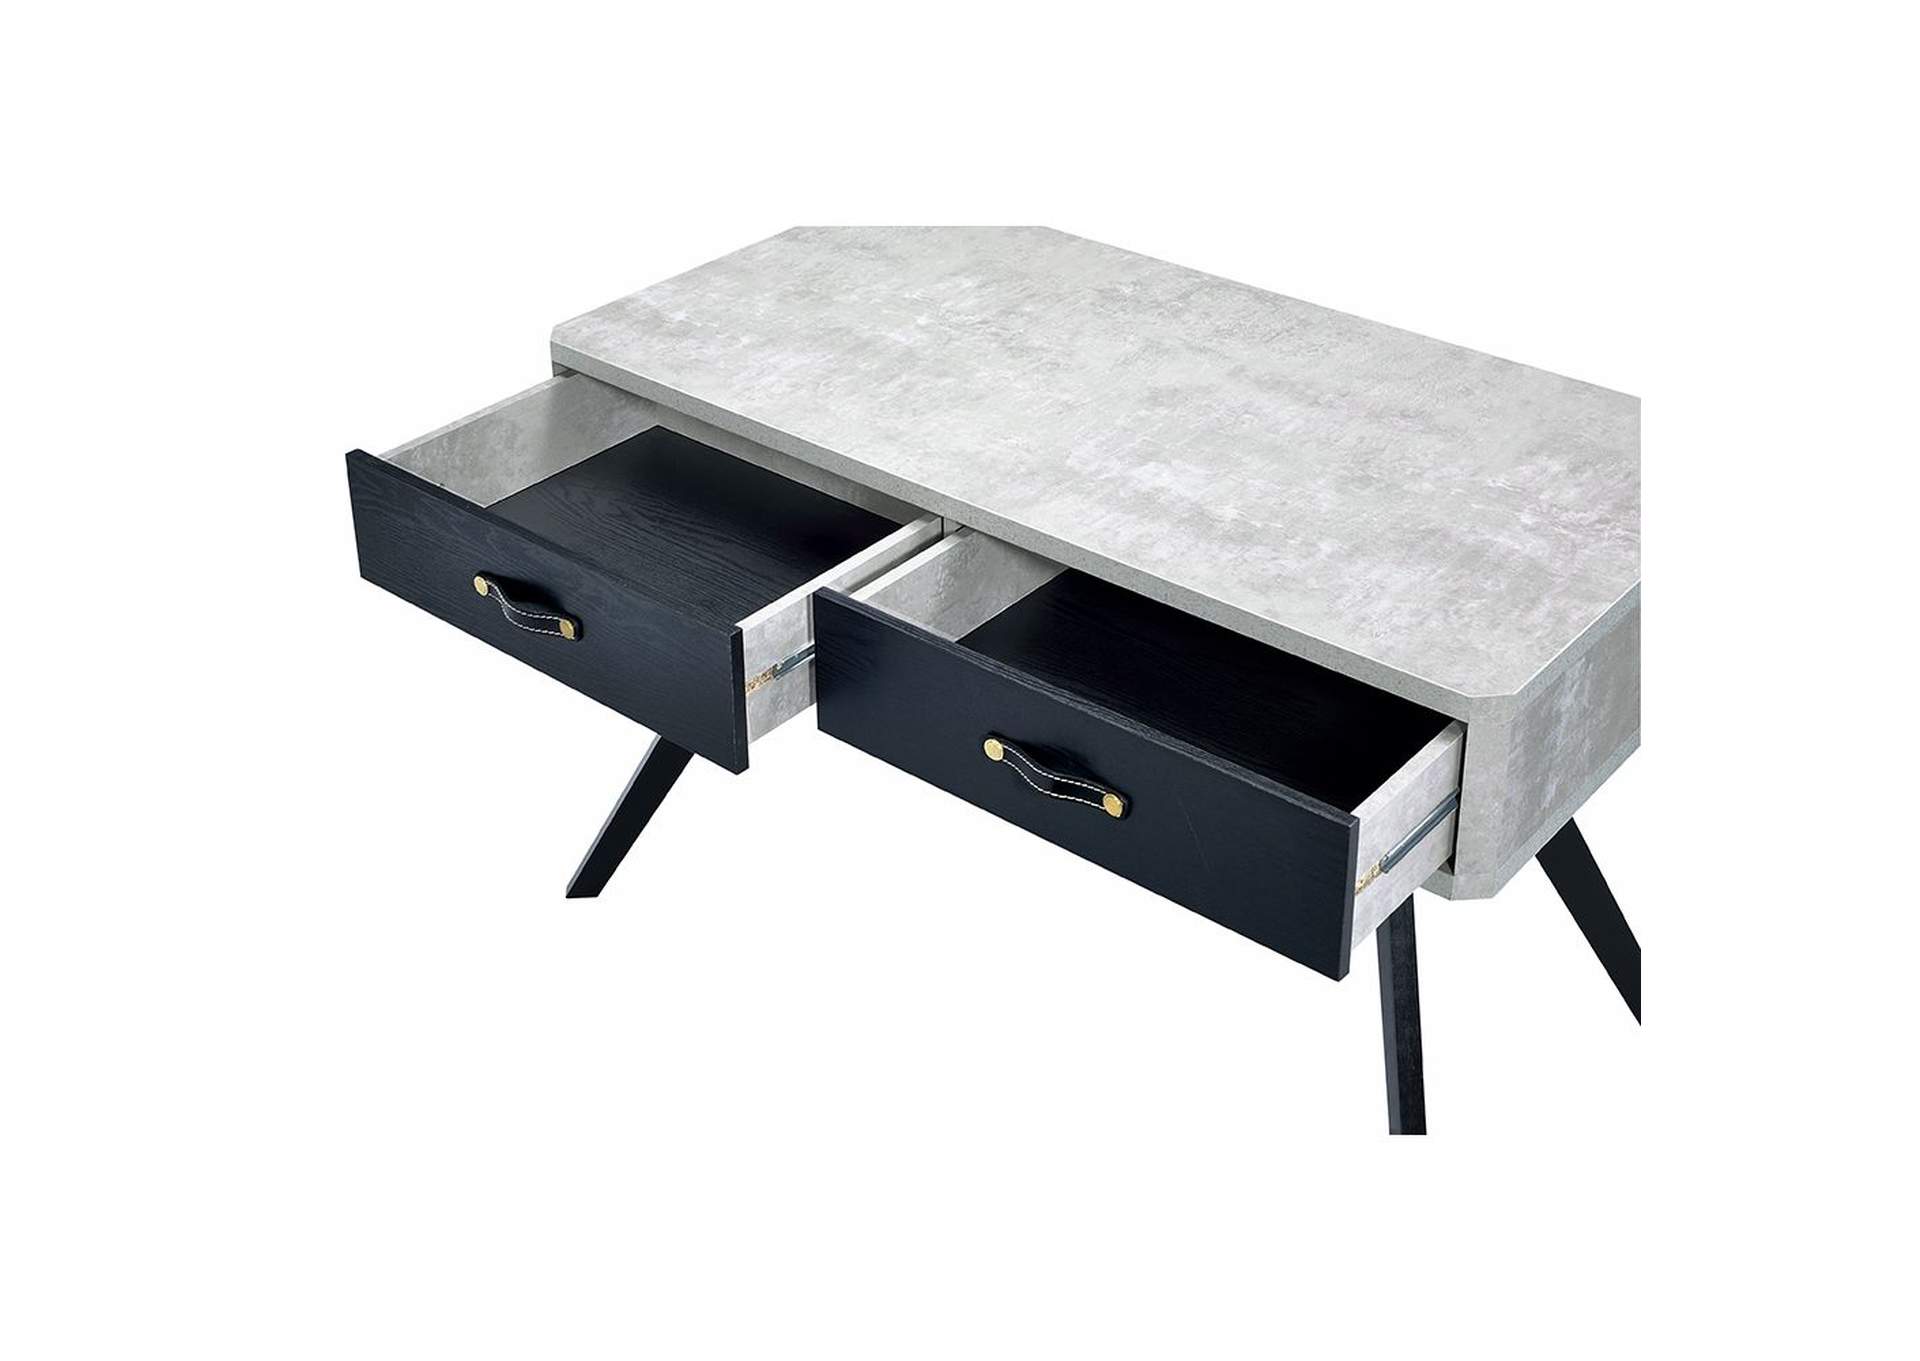 Magna Faux Concrete & Black Desk,Acme